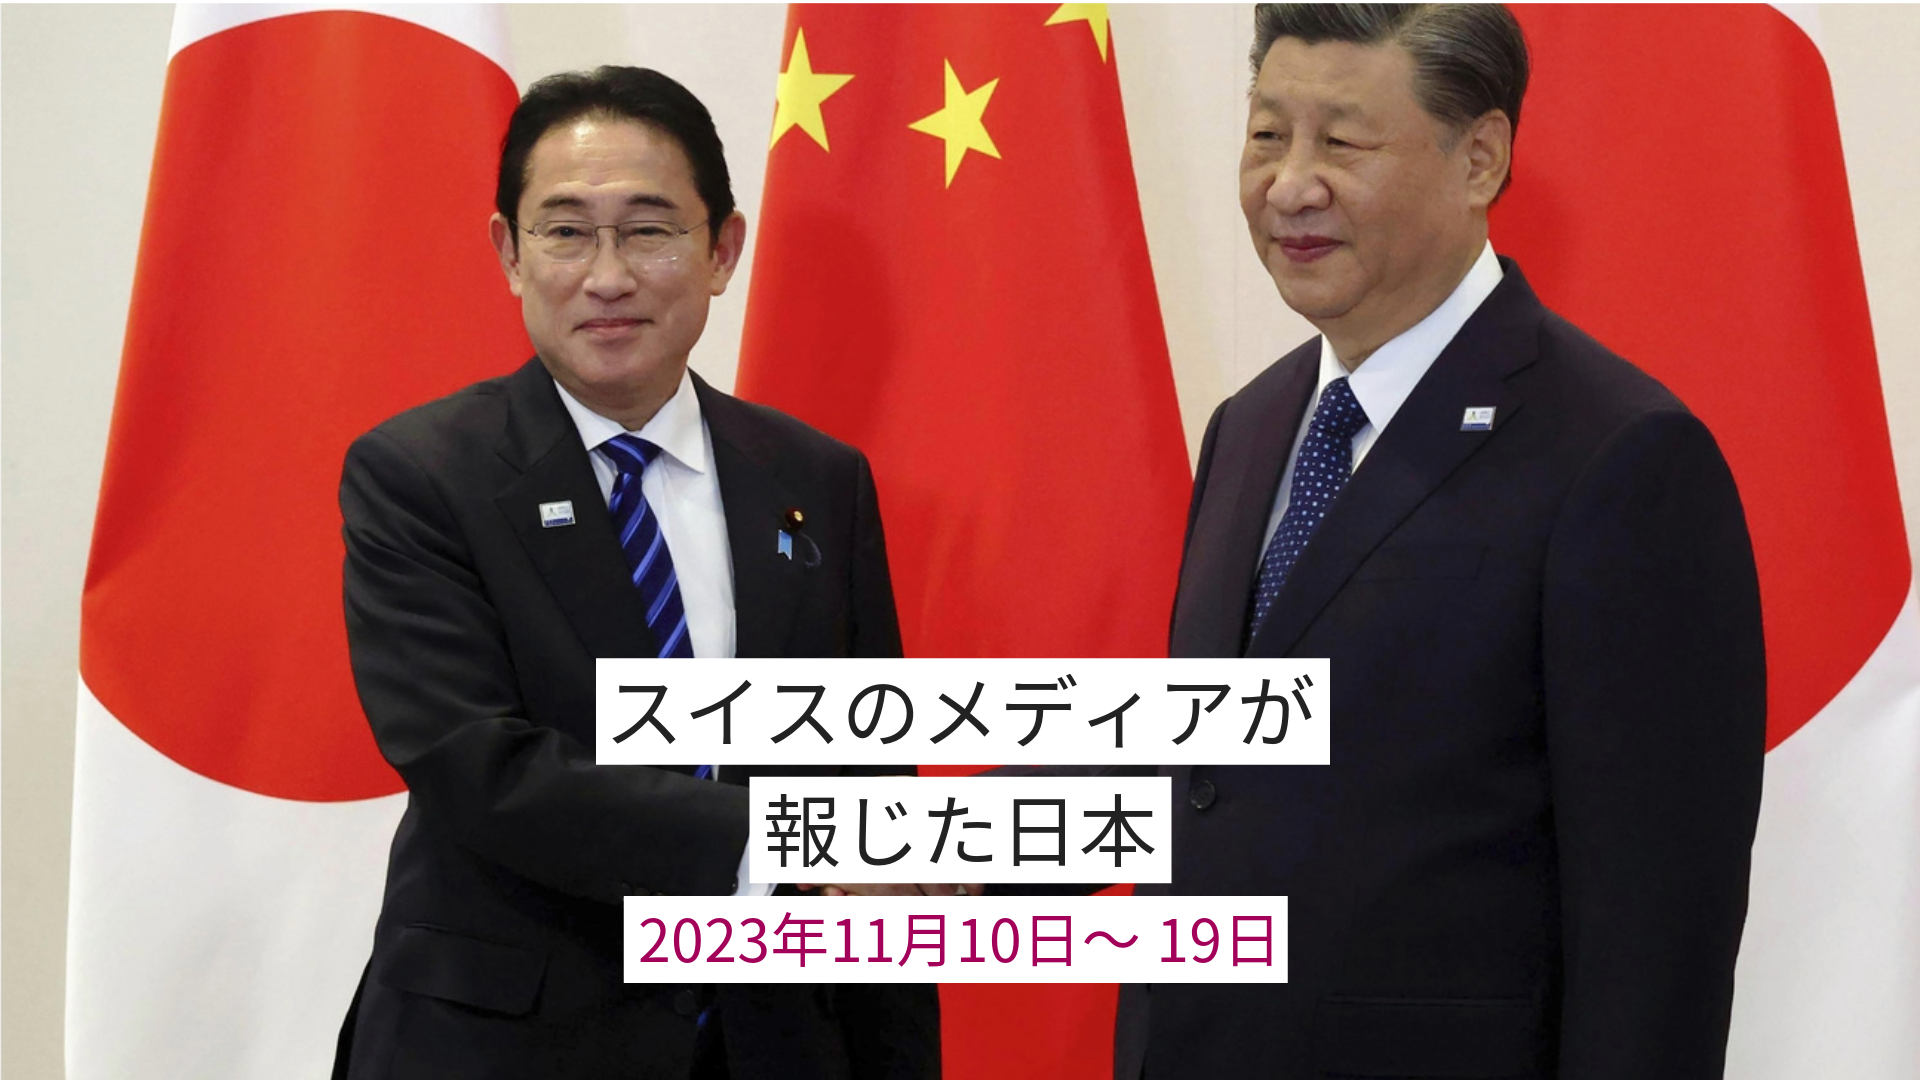 握手する岸田文雄首相と習近平国家主席